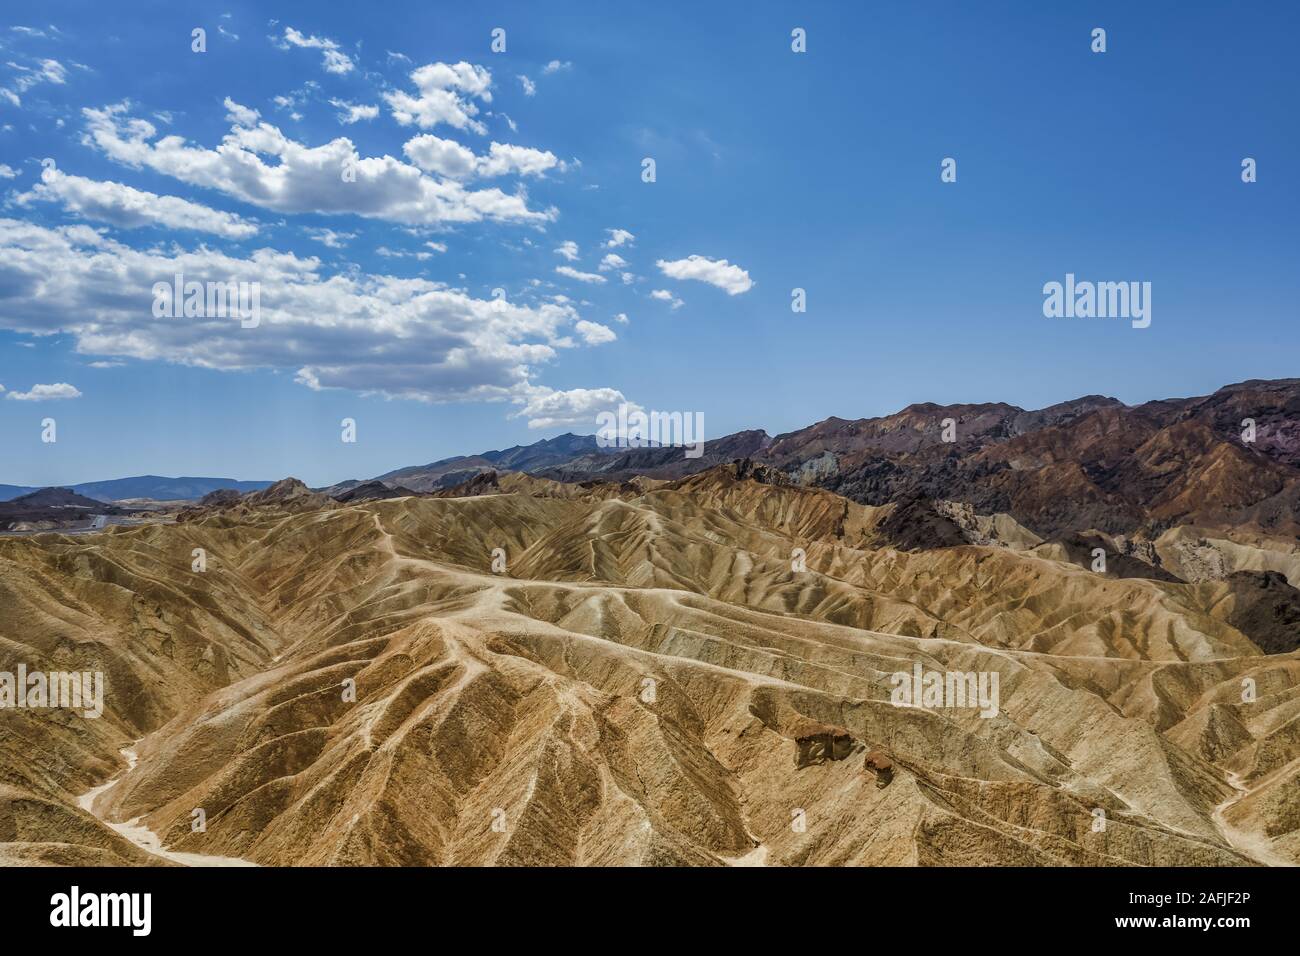 Einen kurzen Spaziergang auf einem gepflasterten Hügel ist Alles, was dafür benötigt wird, dieses fantastische Vantage Zabriskie Point zu nehmen. Death Valley National Park, USA Stockfoto